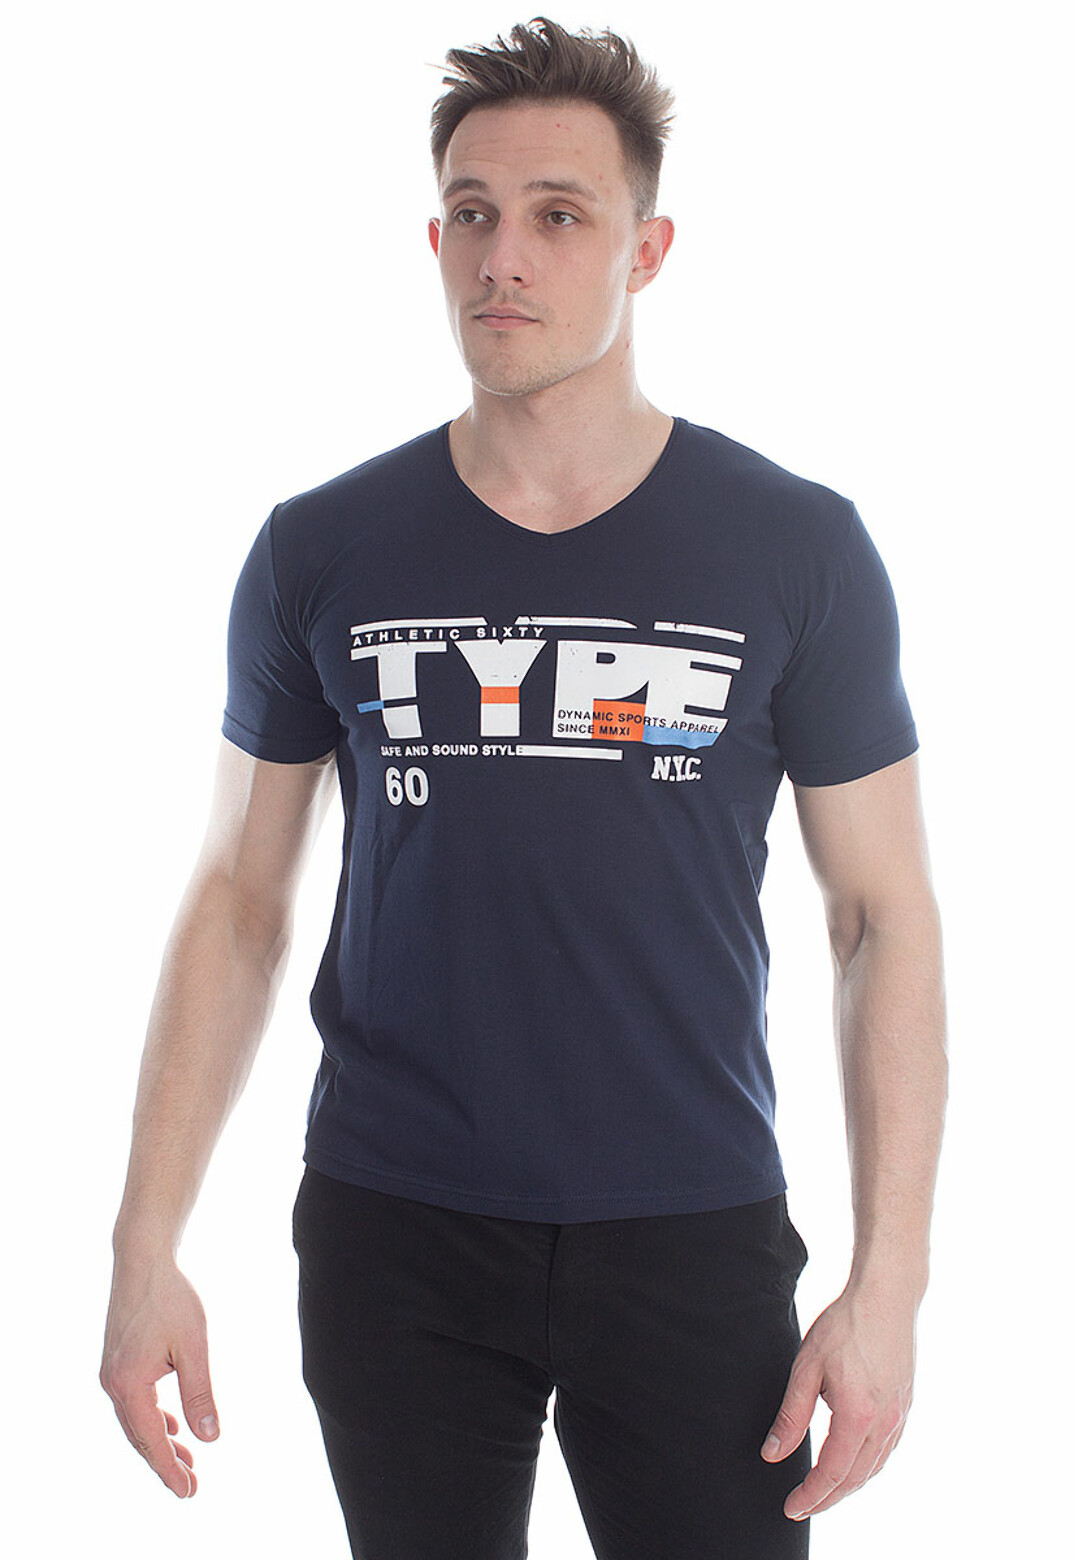 Мужская футболка type-athletic 5053